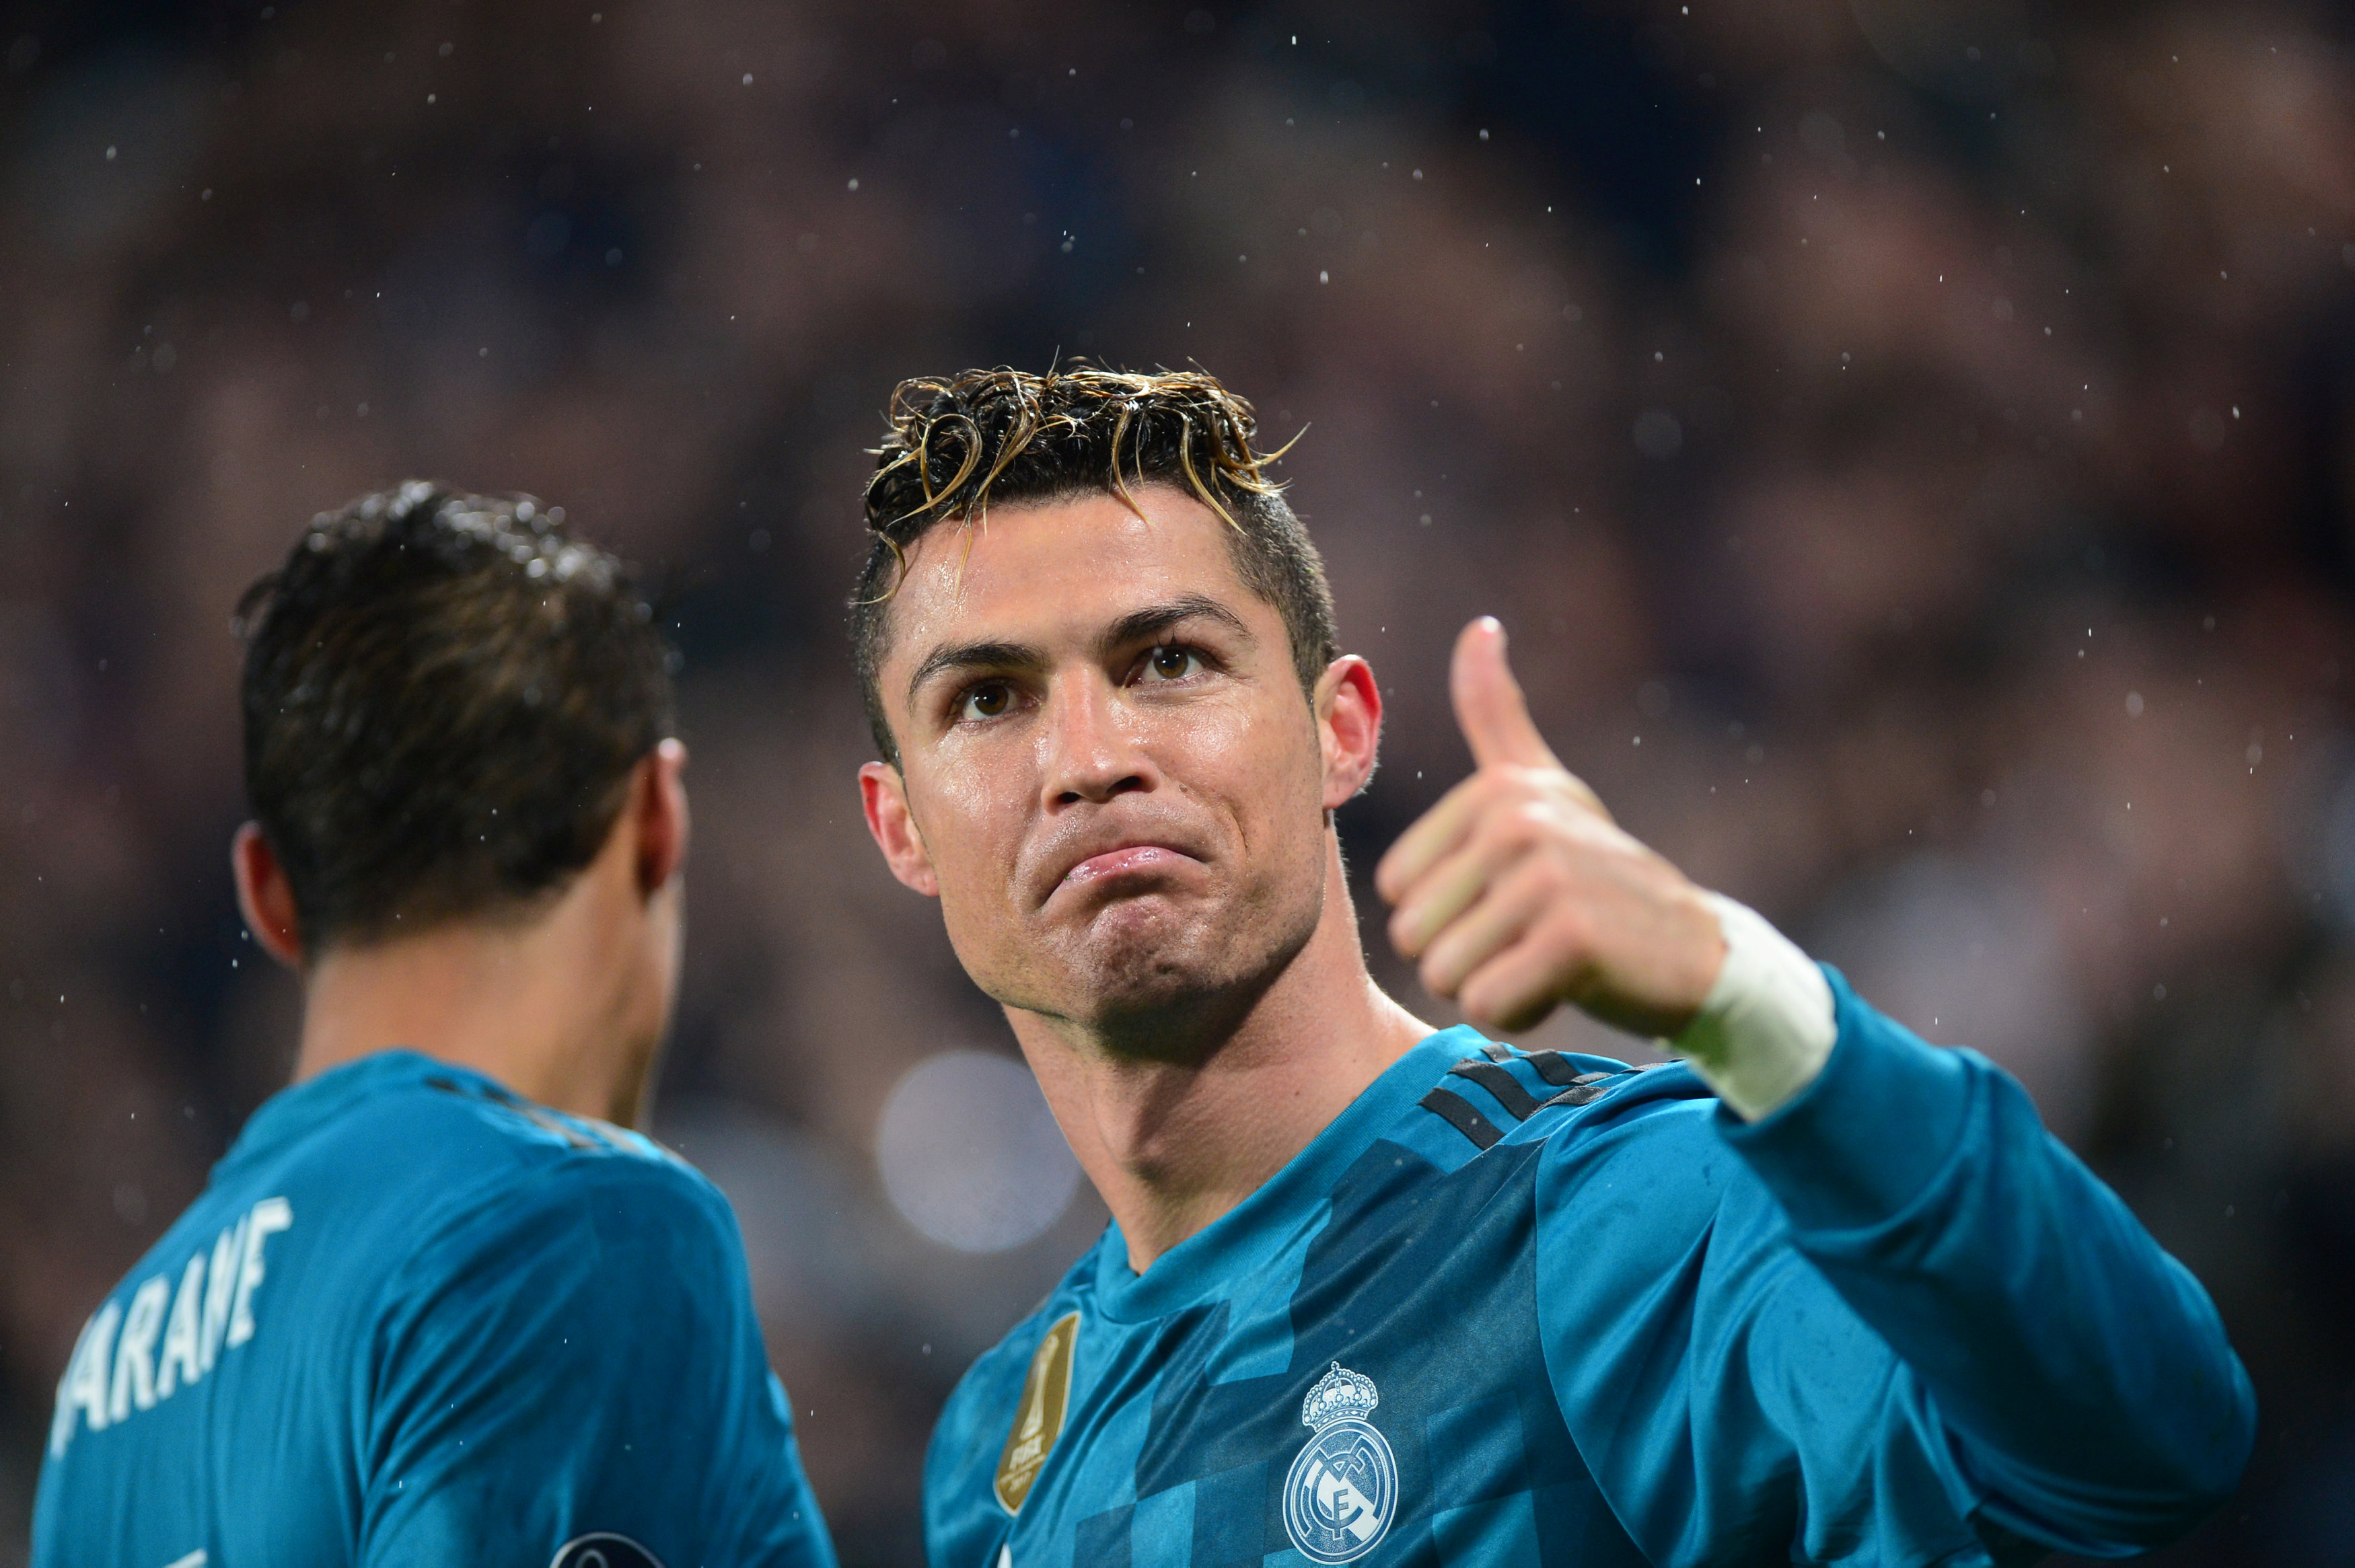 La chilena de Cristiano Ronaldo a la Juventus es favorita al premio “Gol del Año” de la Uefa